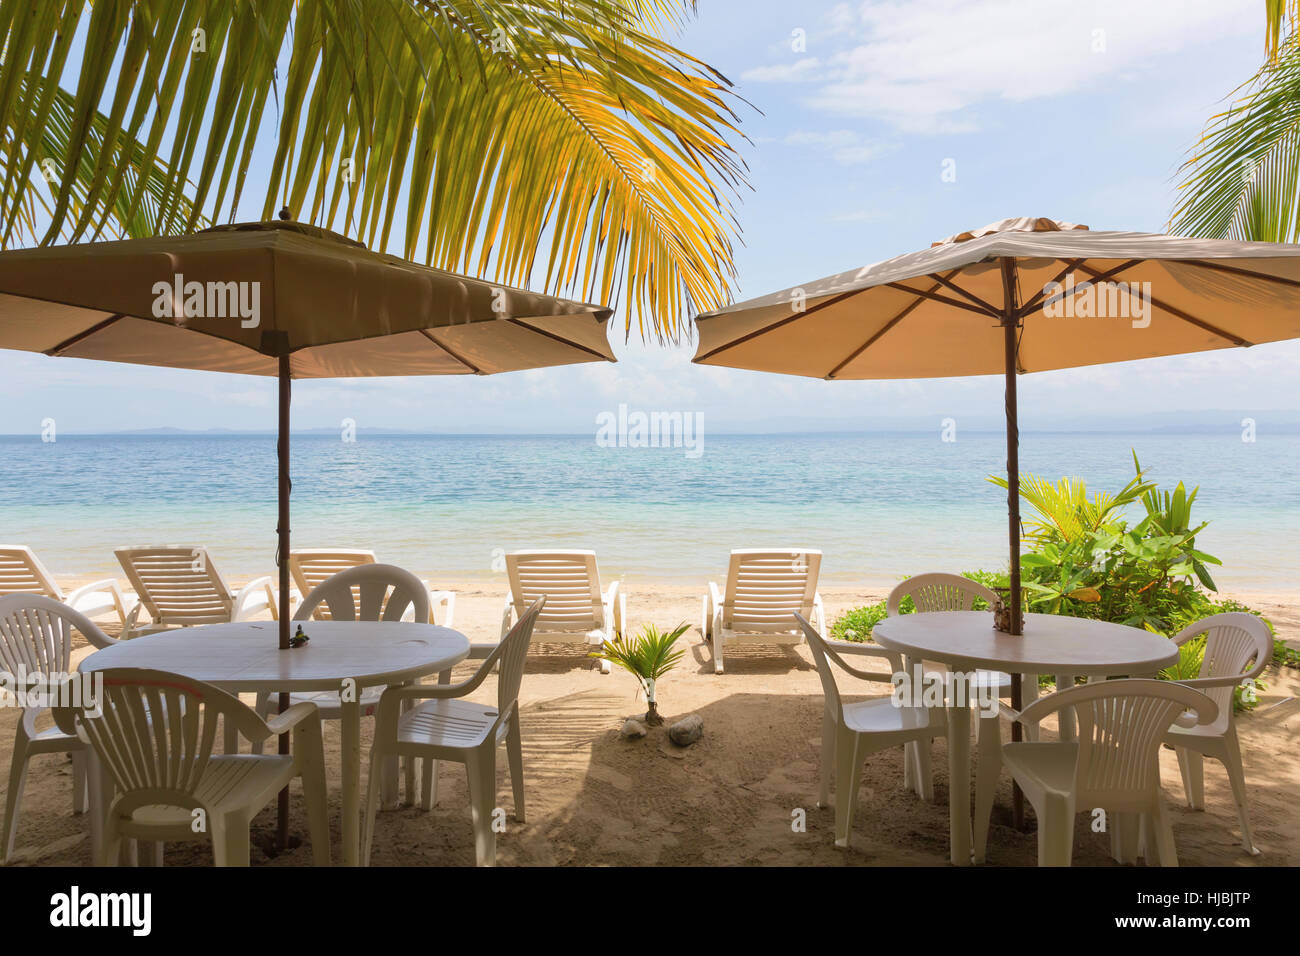 Ristorante tavoli, lettini e ombrellone sotto le foglie delle palme sulla spiaggia Foto Stock